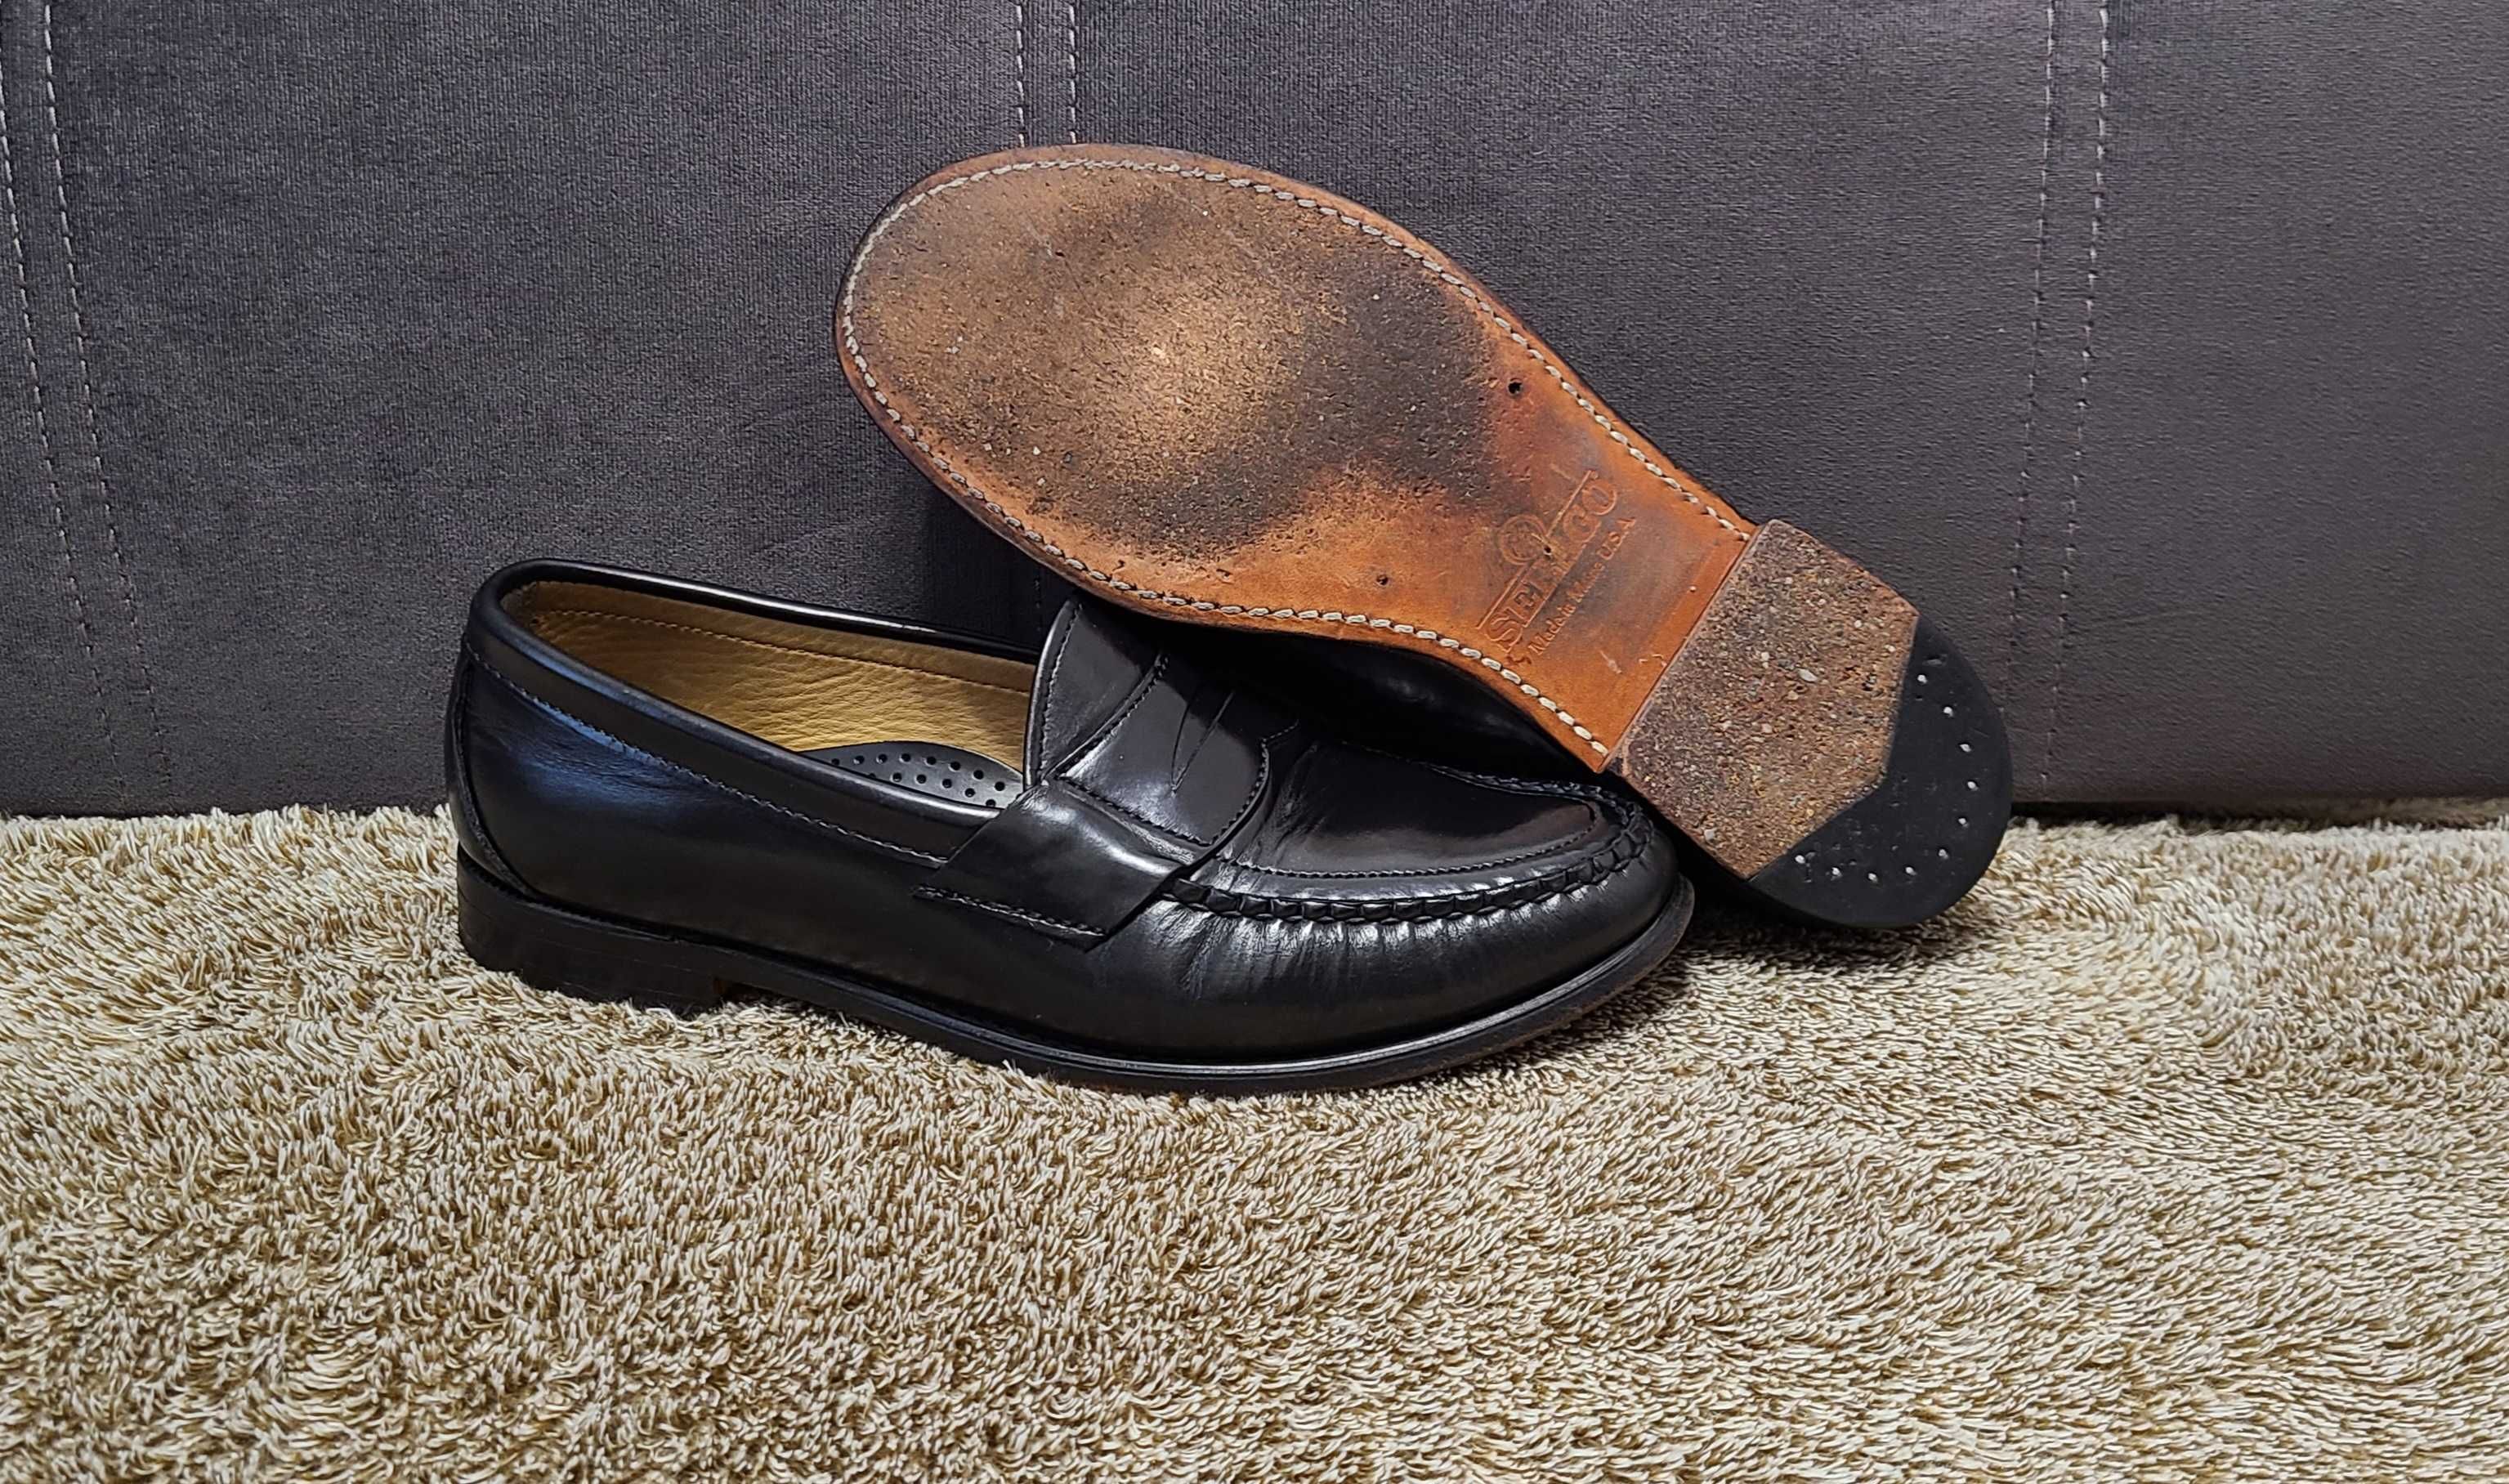 Чоловічі шкіряні туфлі лофери від американського бренда sebago